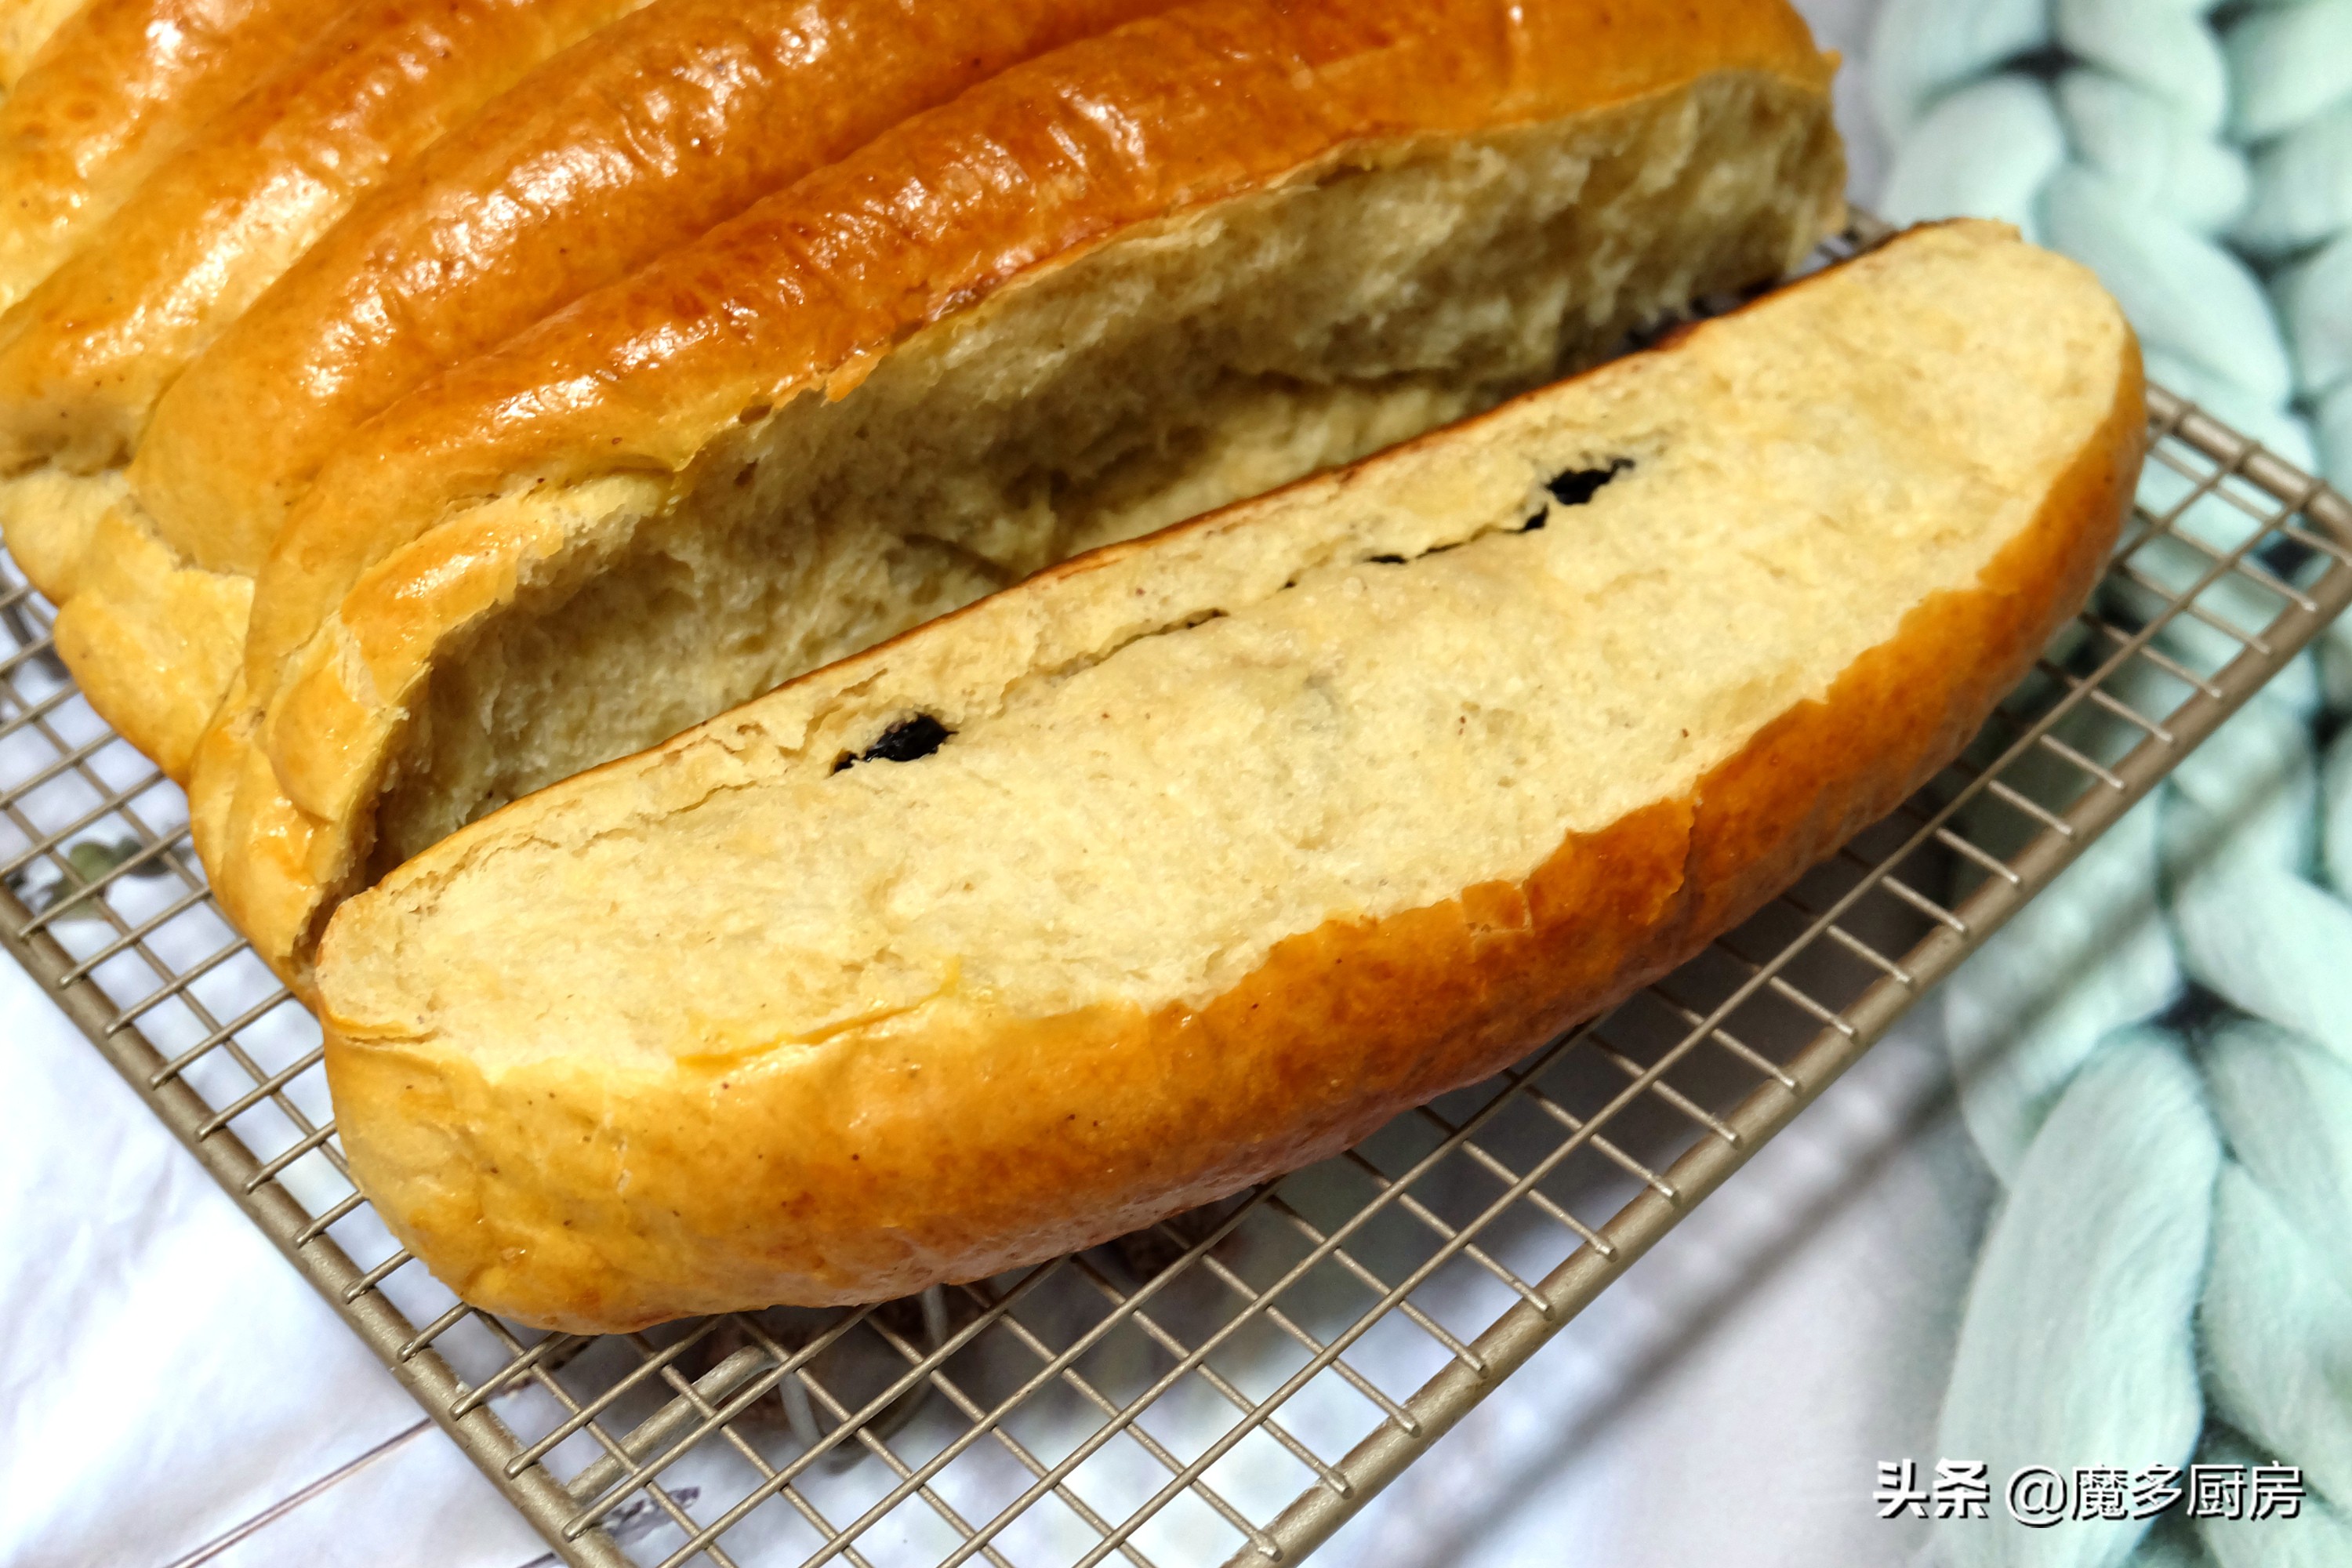 分享一个全家都爱吃的烤面包的做法